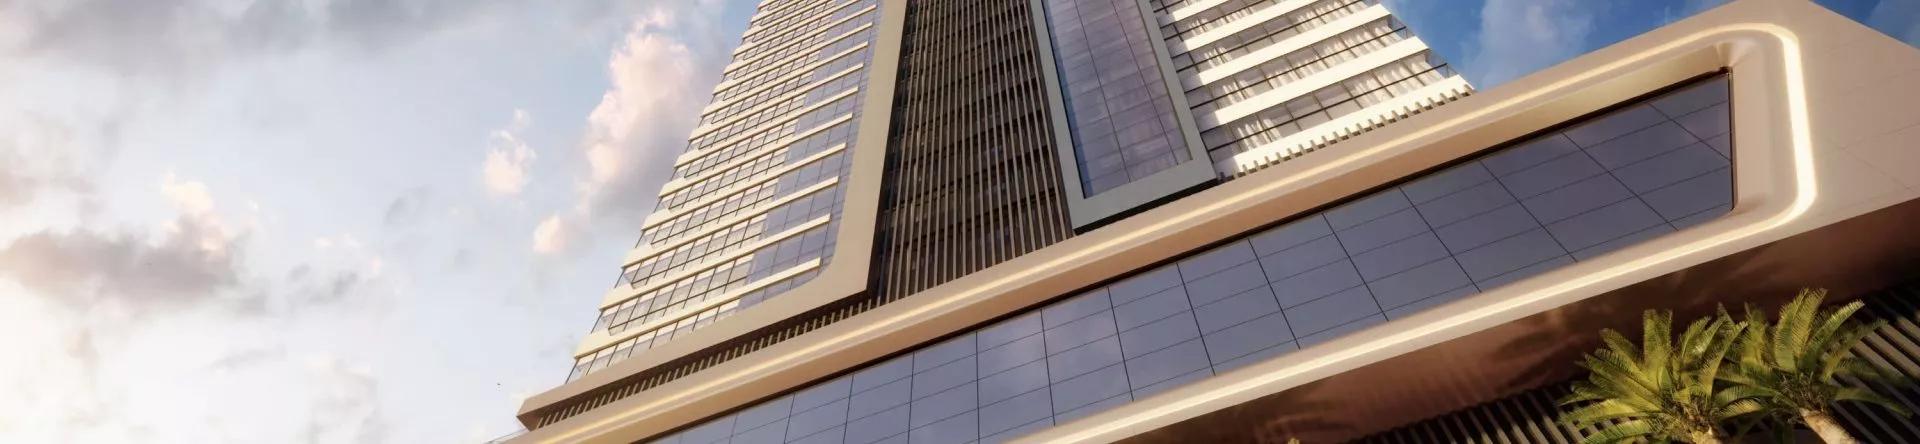 Fachada do Doha Tower, da C’Seger Construtora e Incorporadora